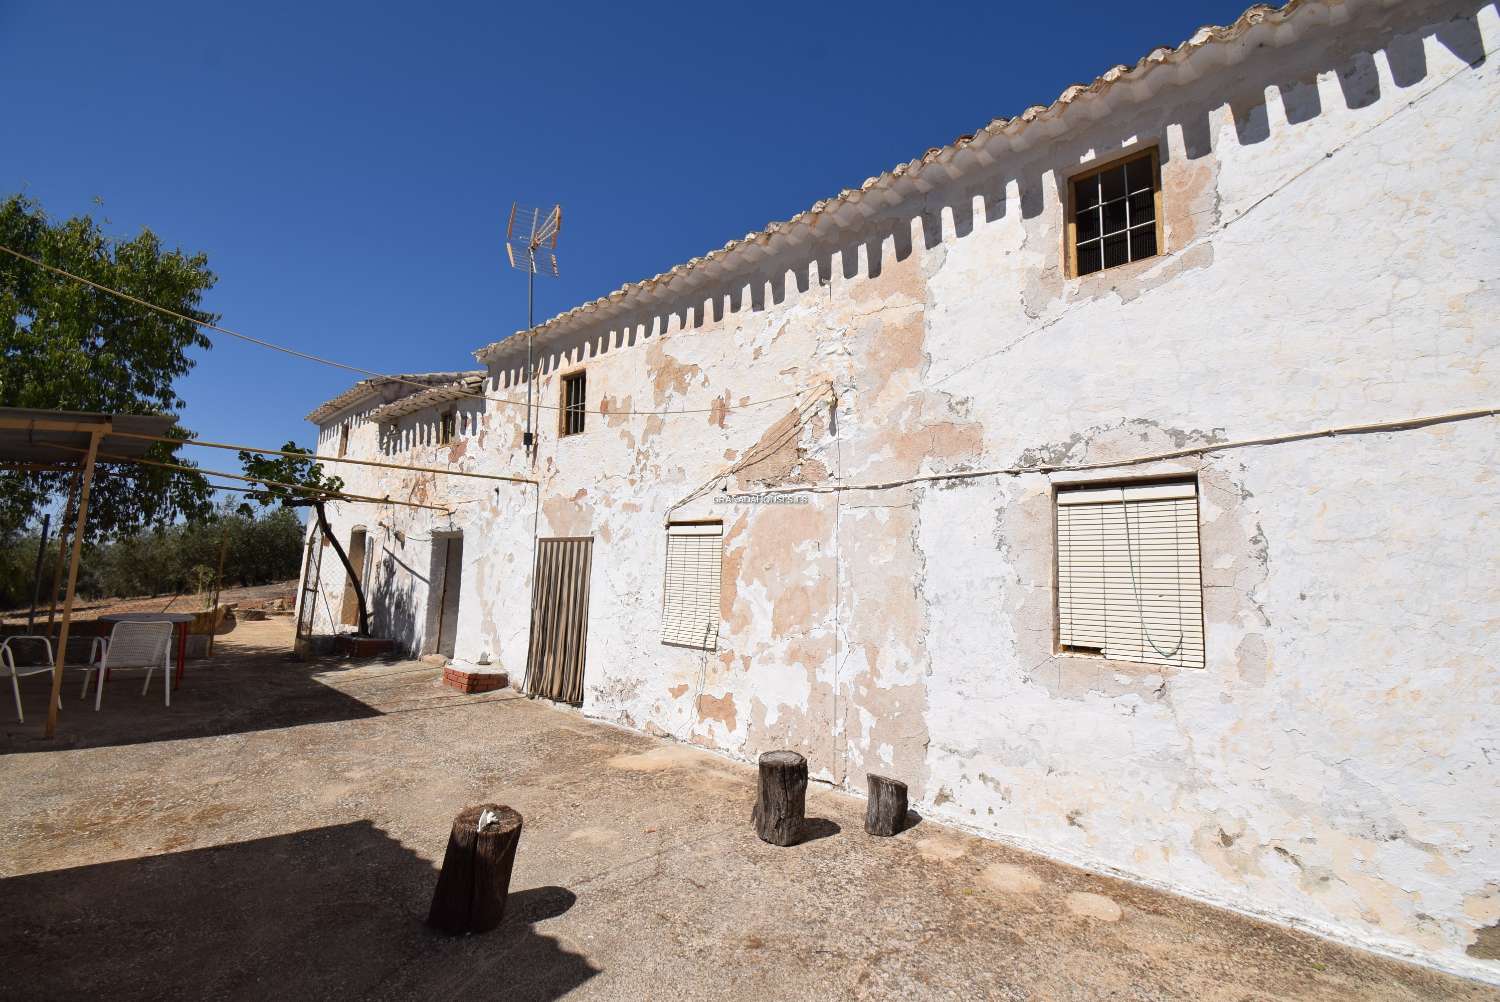 Andalusisches Bauernhaus zum Renovieren